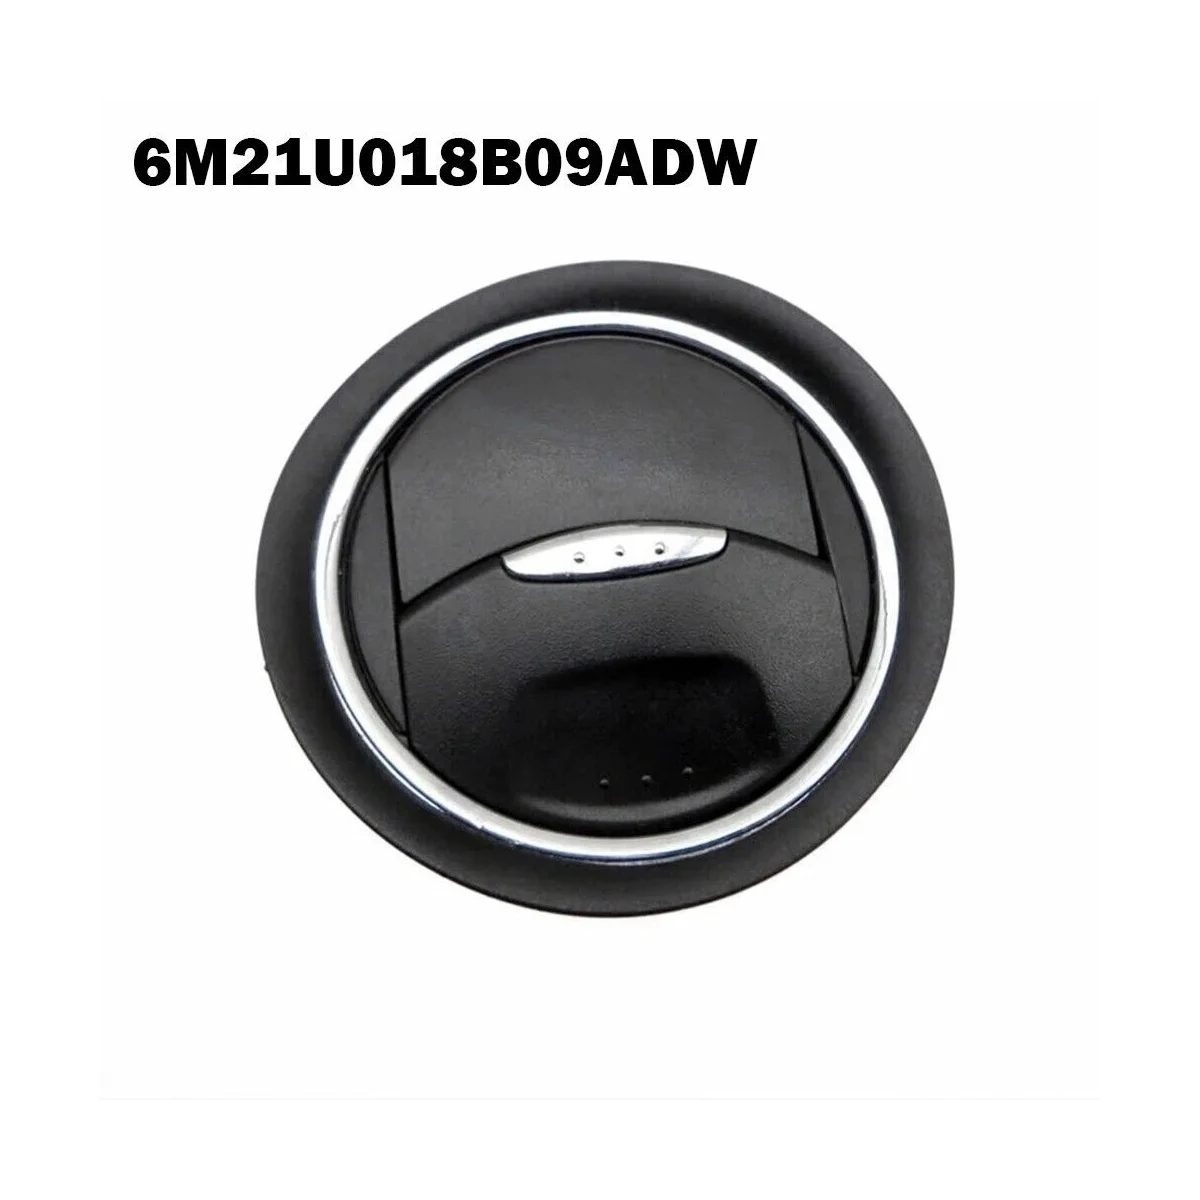 Вентиляционное отверстие приборной панели, Круглая Решетка воздуховыпуска кондиционера для Ford Mondeo Galaxy S-Max 6M21U018B09ADW Изображение 5 